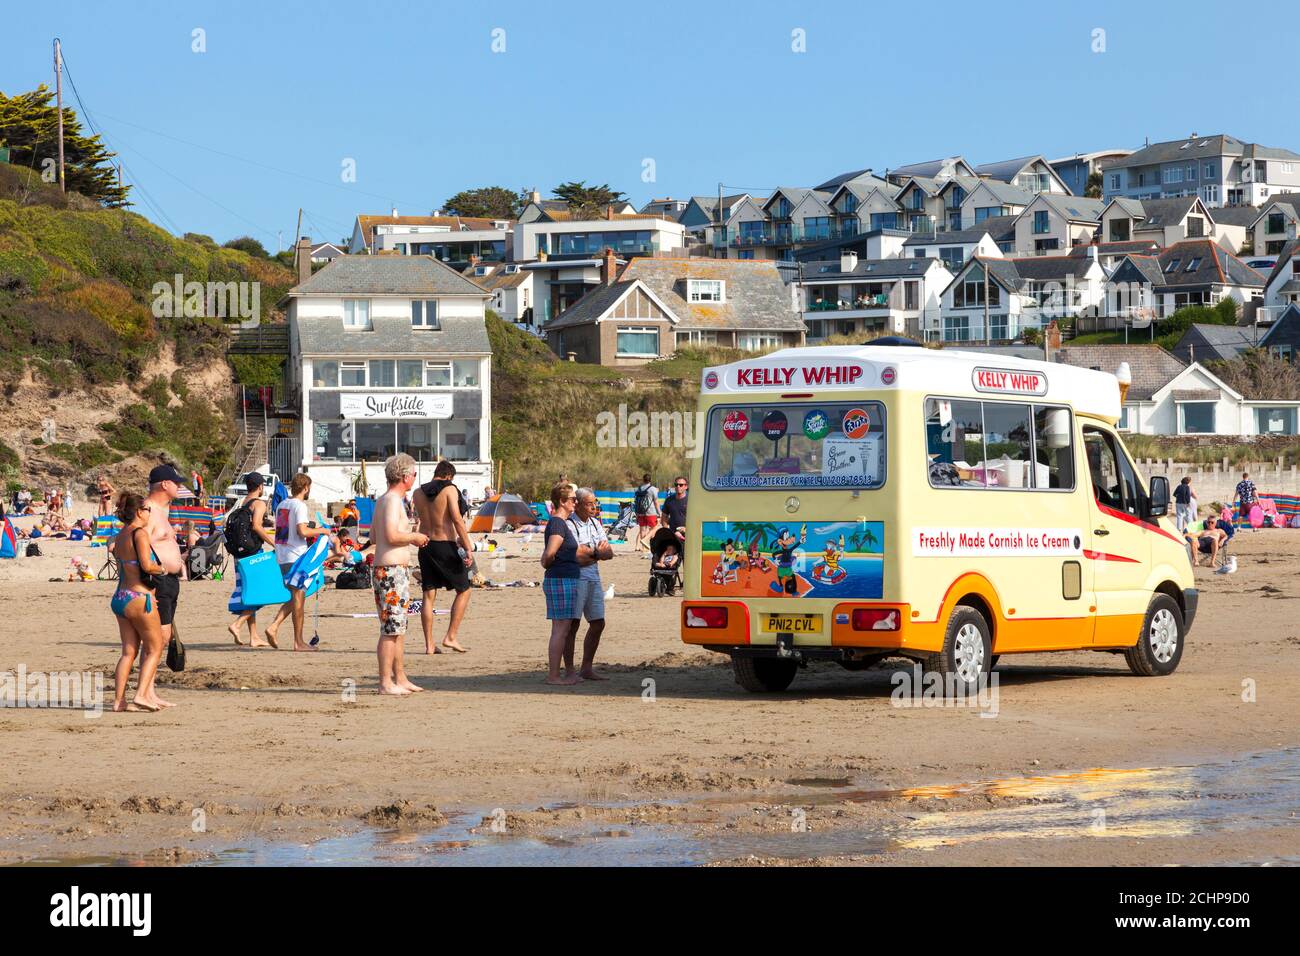 Polzeath, Cornwall, Royaume-Uni. 14 septembre 2020. Les vacanciers qui font la queue pour la glace dans un après-midi chaud et ensoleillé sur Polzeath Beach, sur la côte atlantique de North Cornwall. Banque D'Images